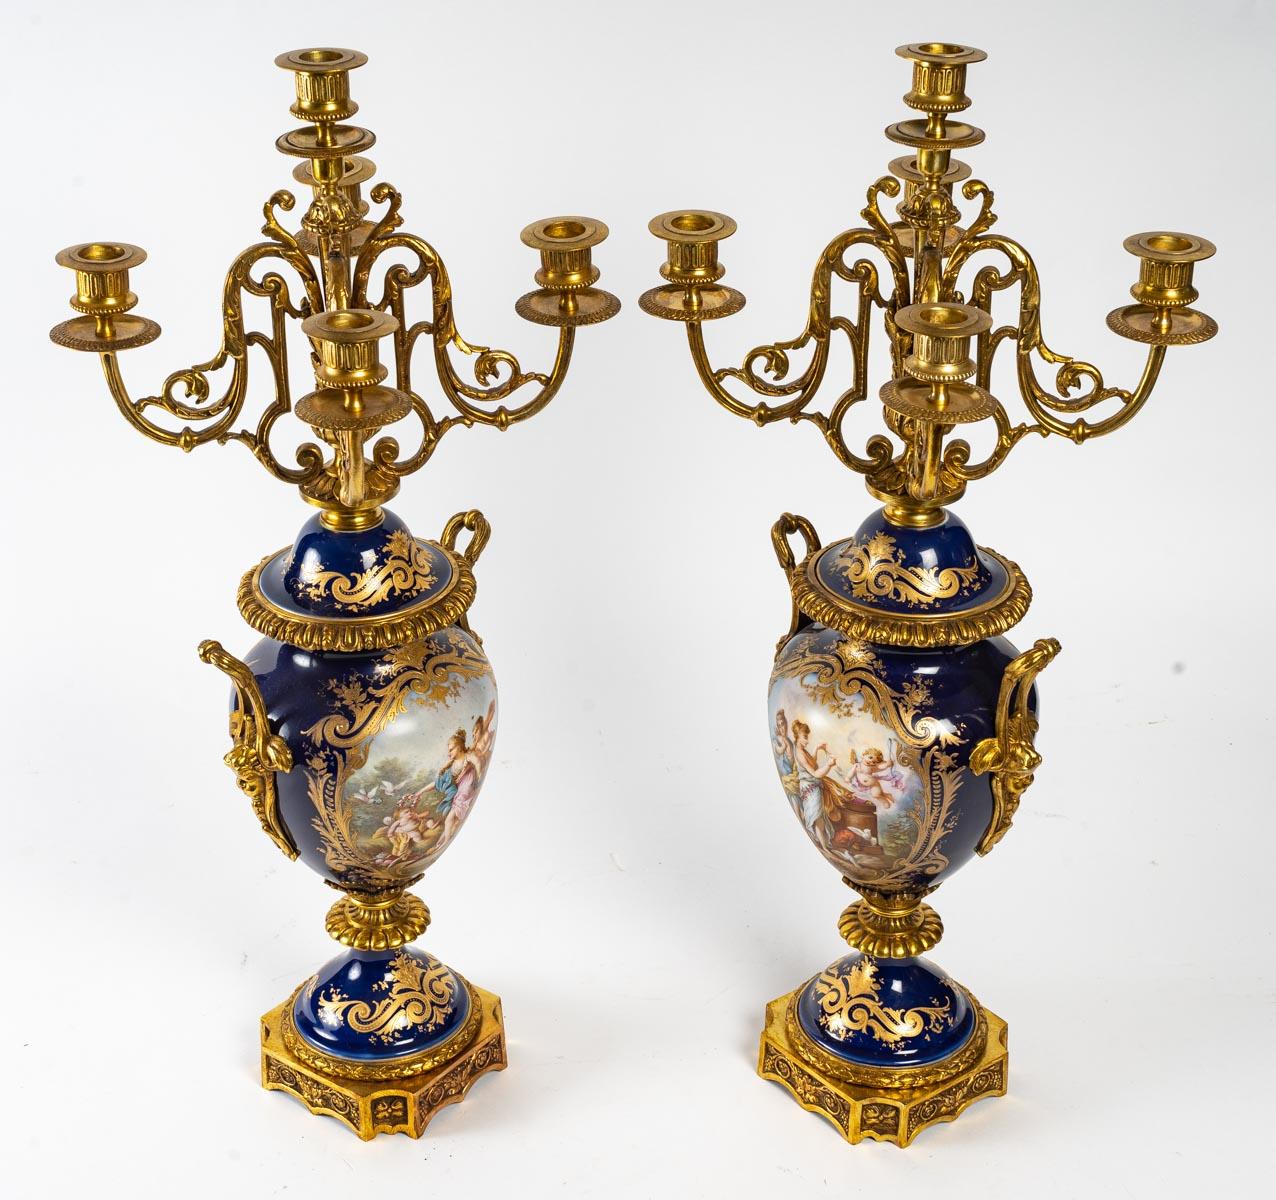 Napoleon III period gilt bronze porcelain mantelpiece, 19th century.
Measures: Cartel - H: 57 cm, W: 30 cm, D: 23 cm
Candelabra - H: 64 cm, W: 27 cm, D: 27 cm.
   